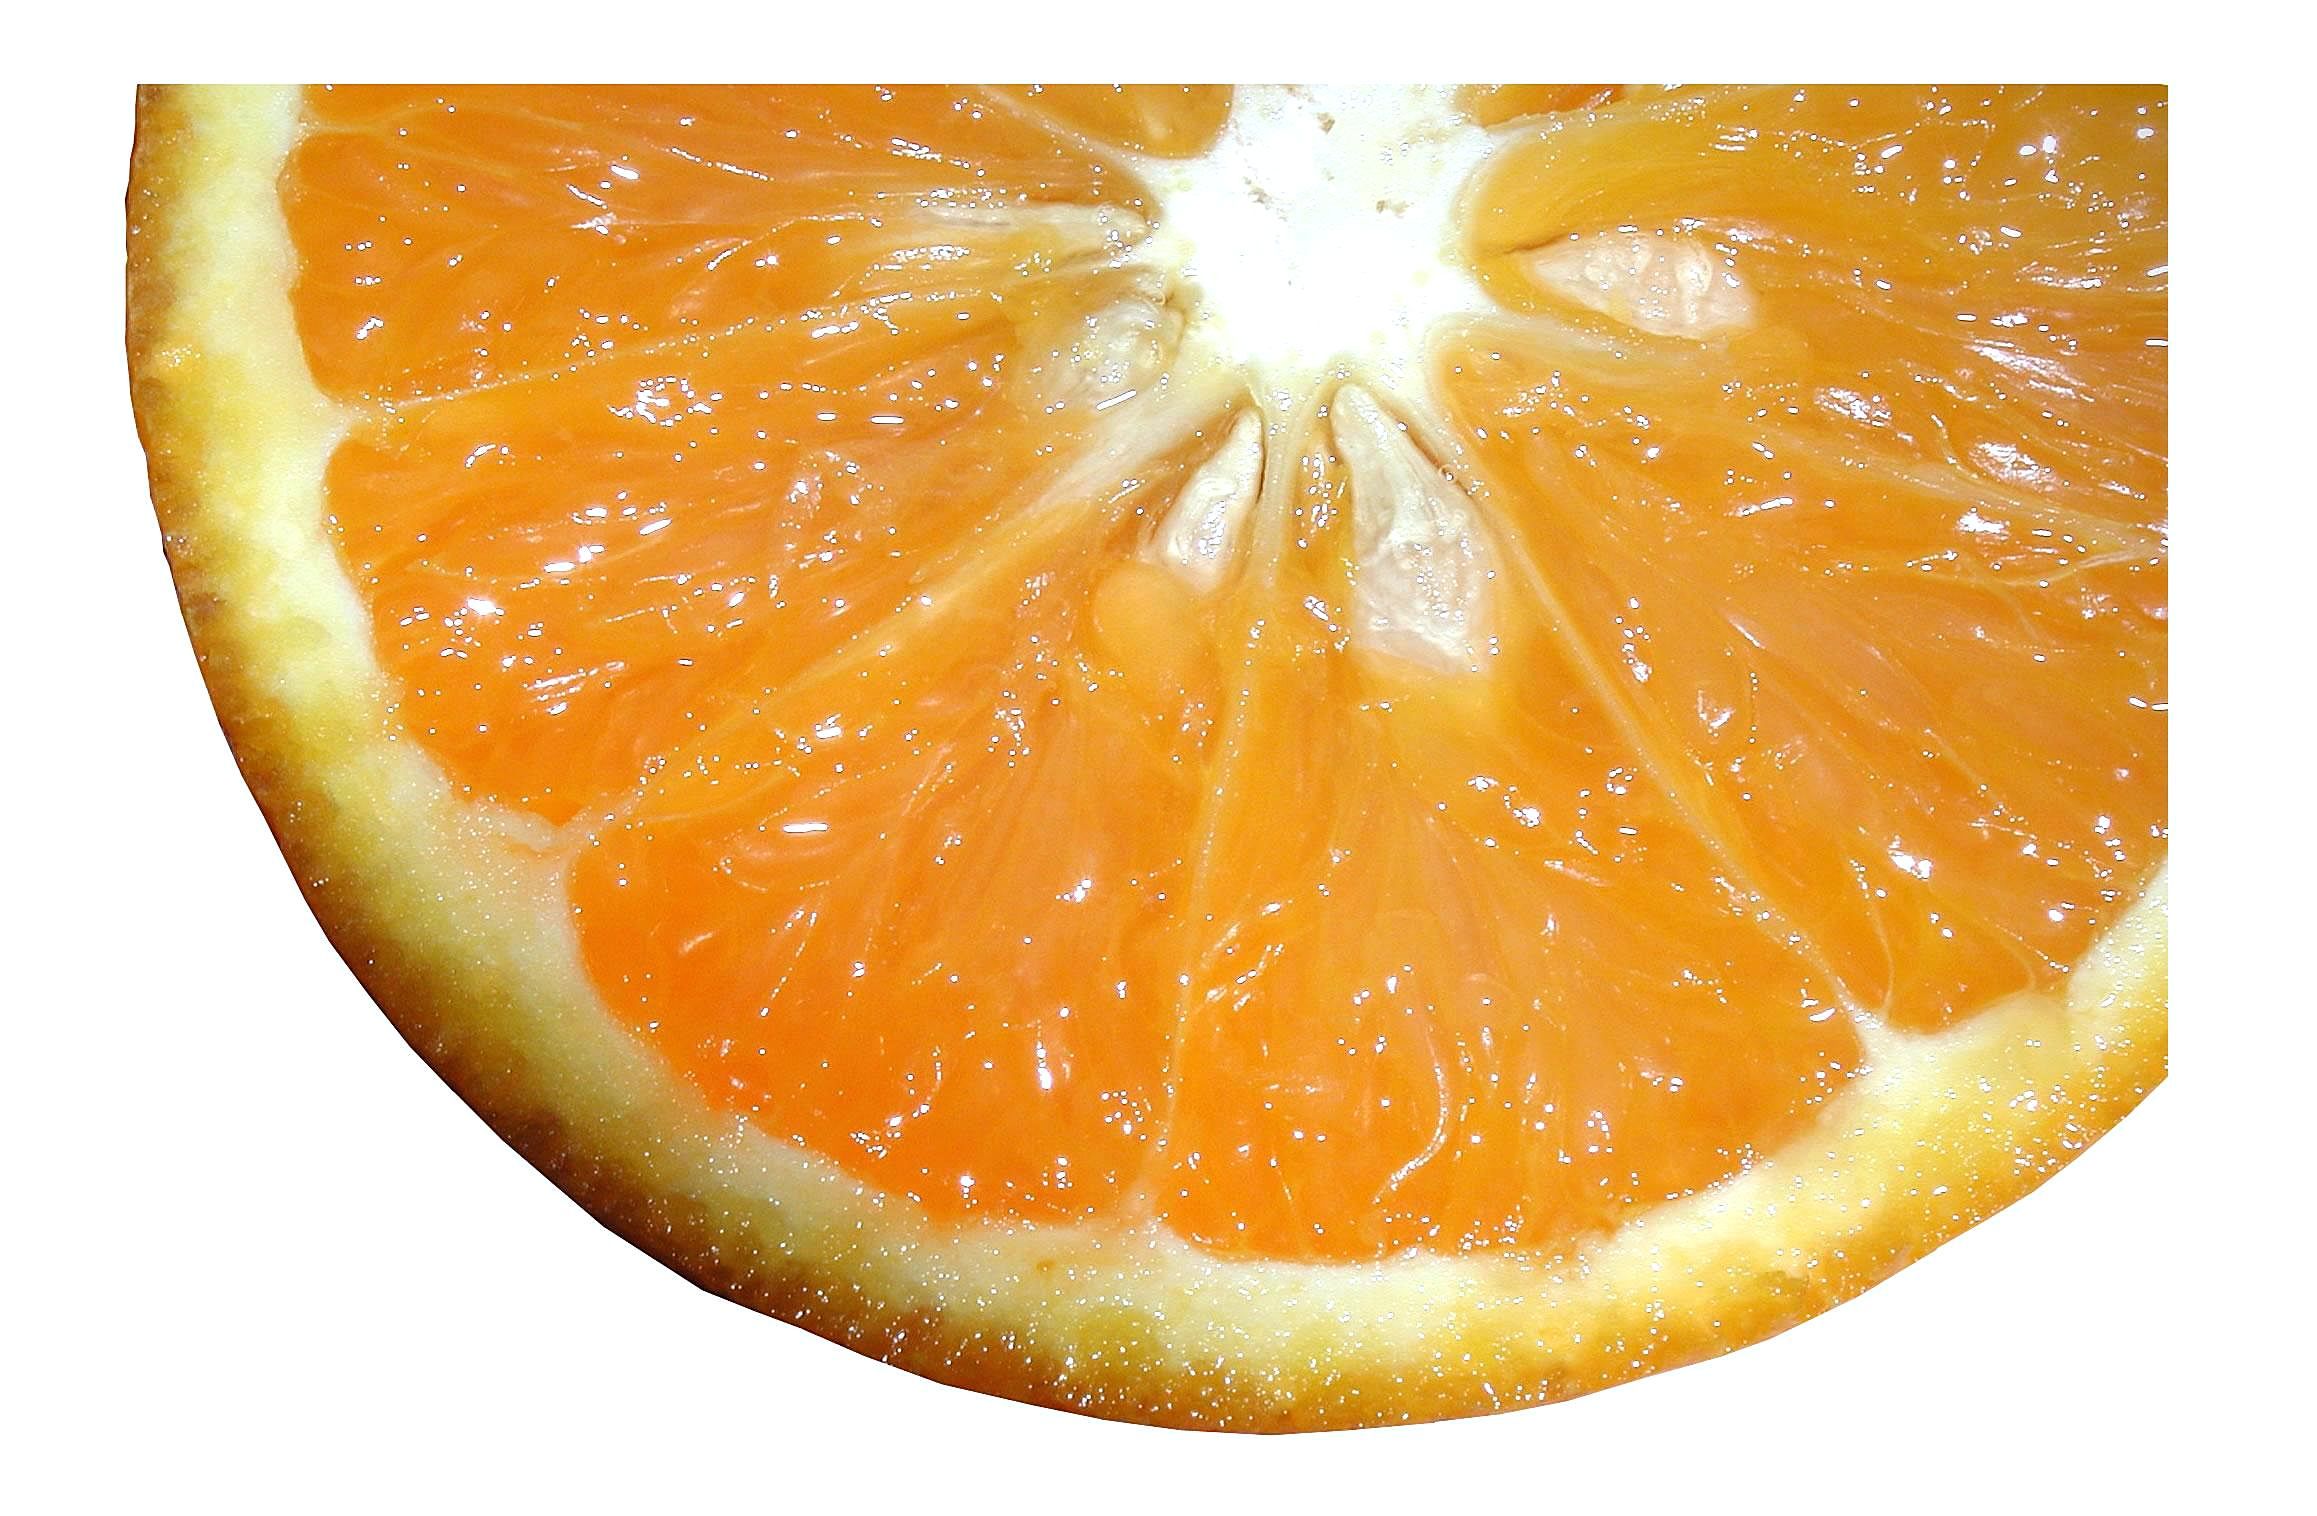 Sliced orange fruit photo